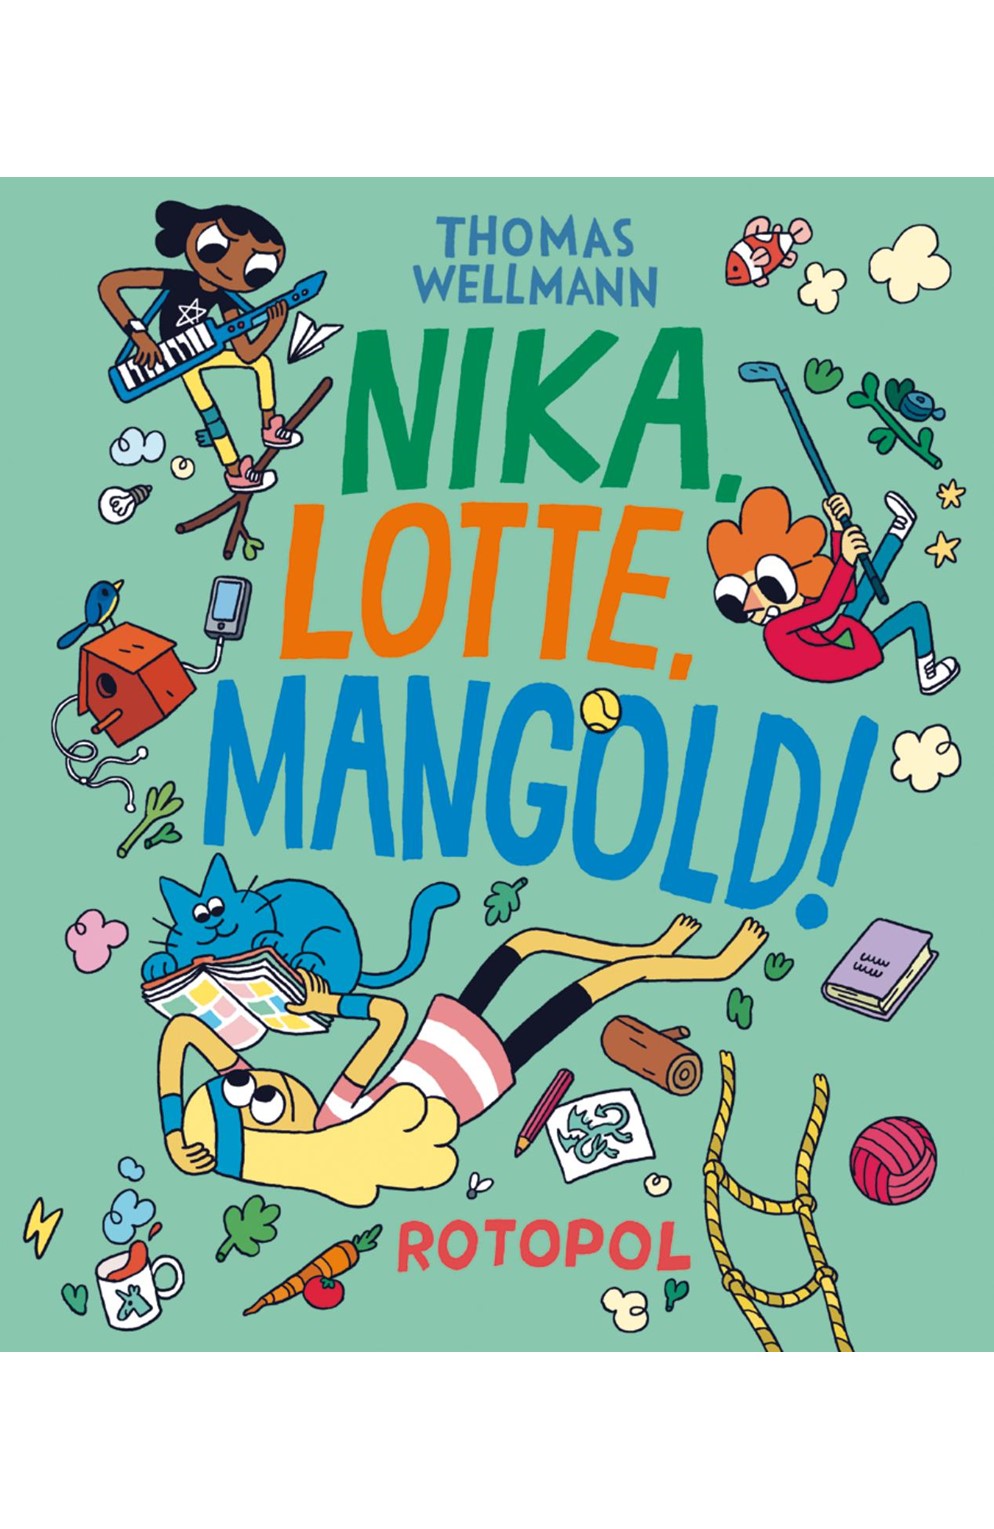 Nika, Lotte, Mangold!